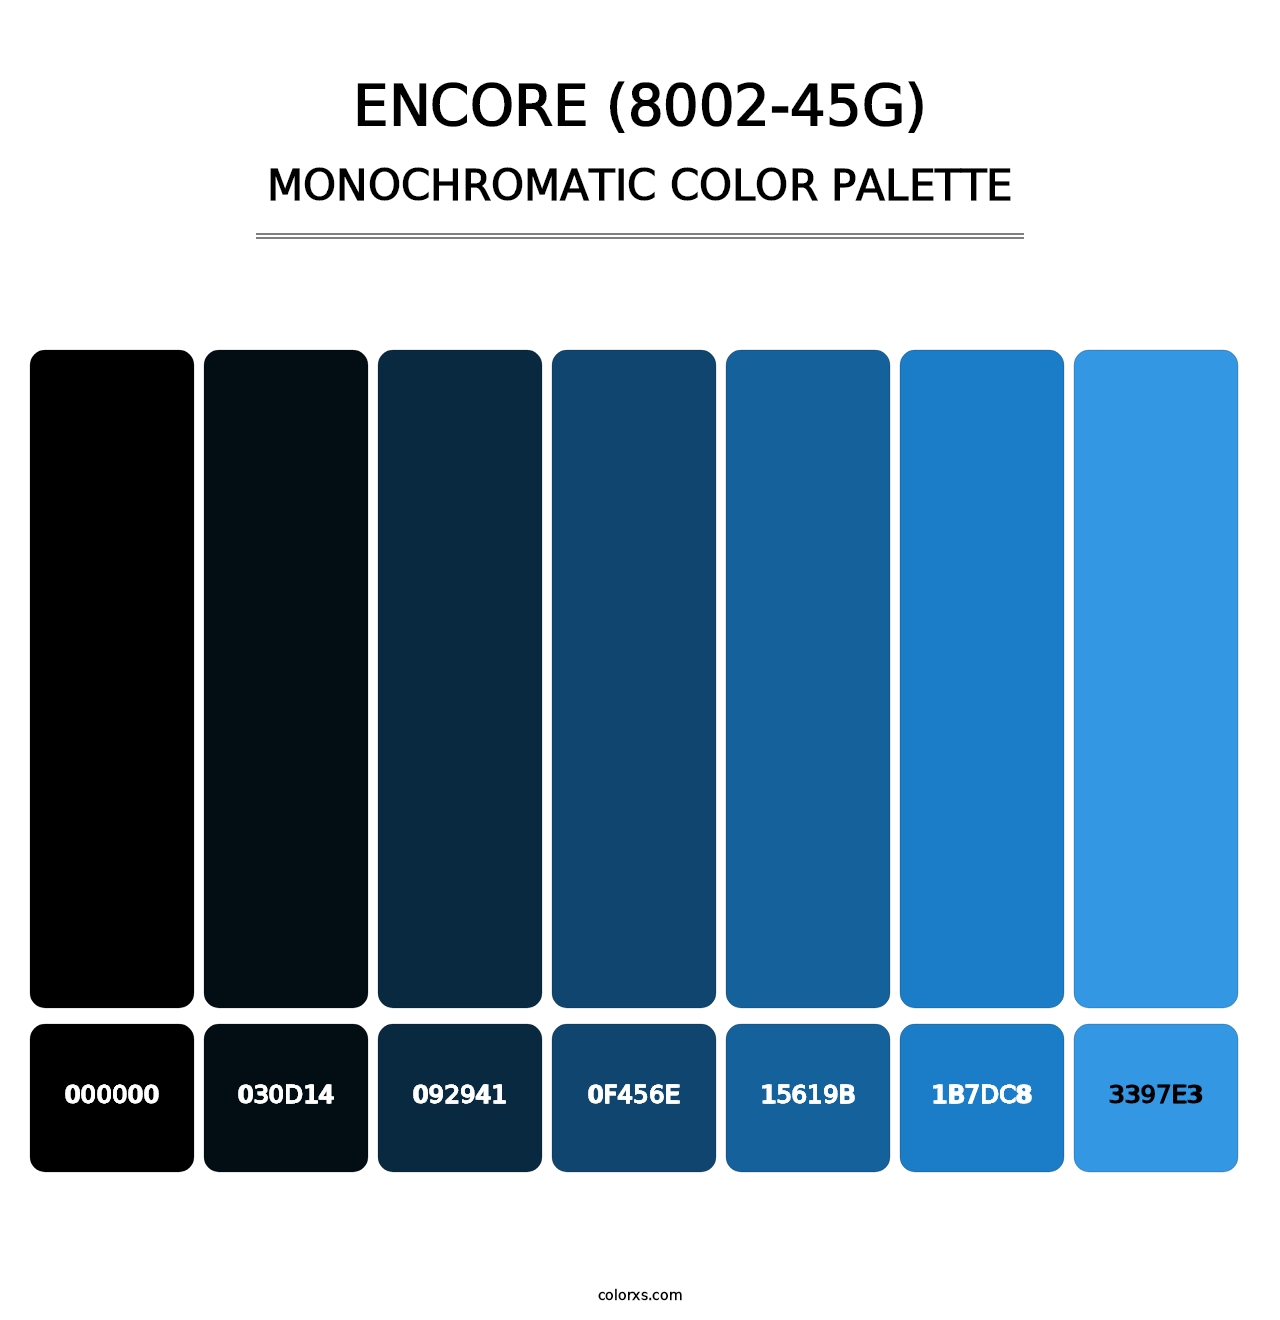 Encore (8002-45G) - Monochromatic Color Palette